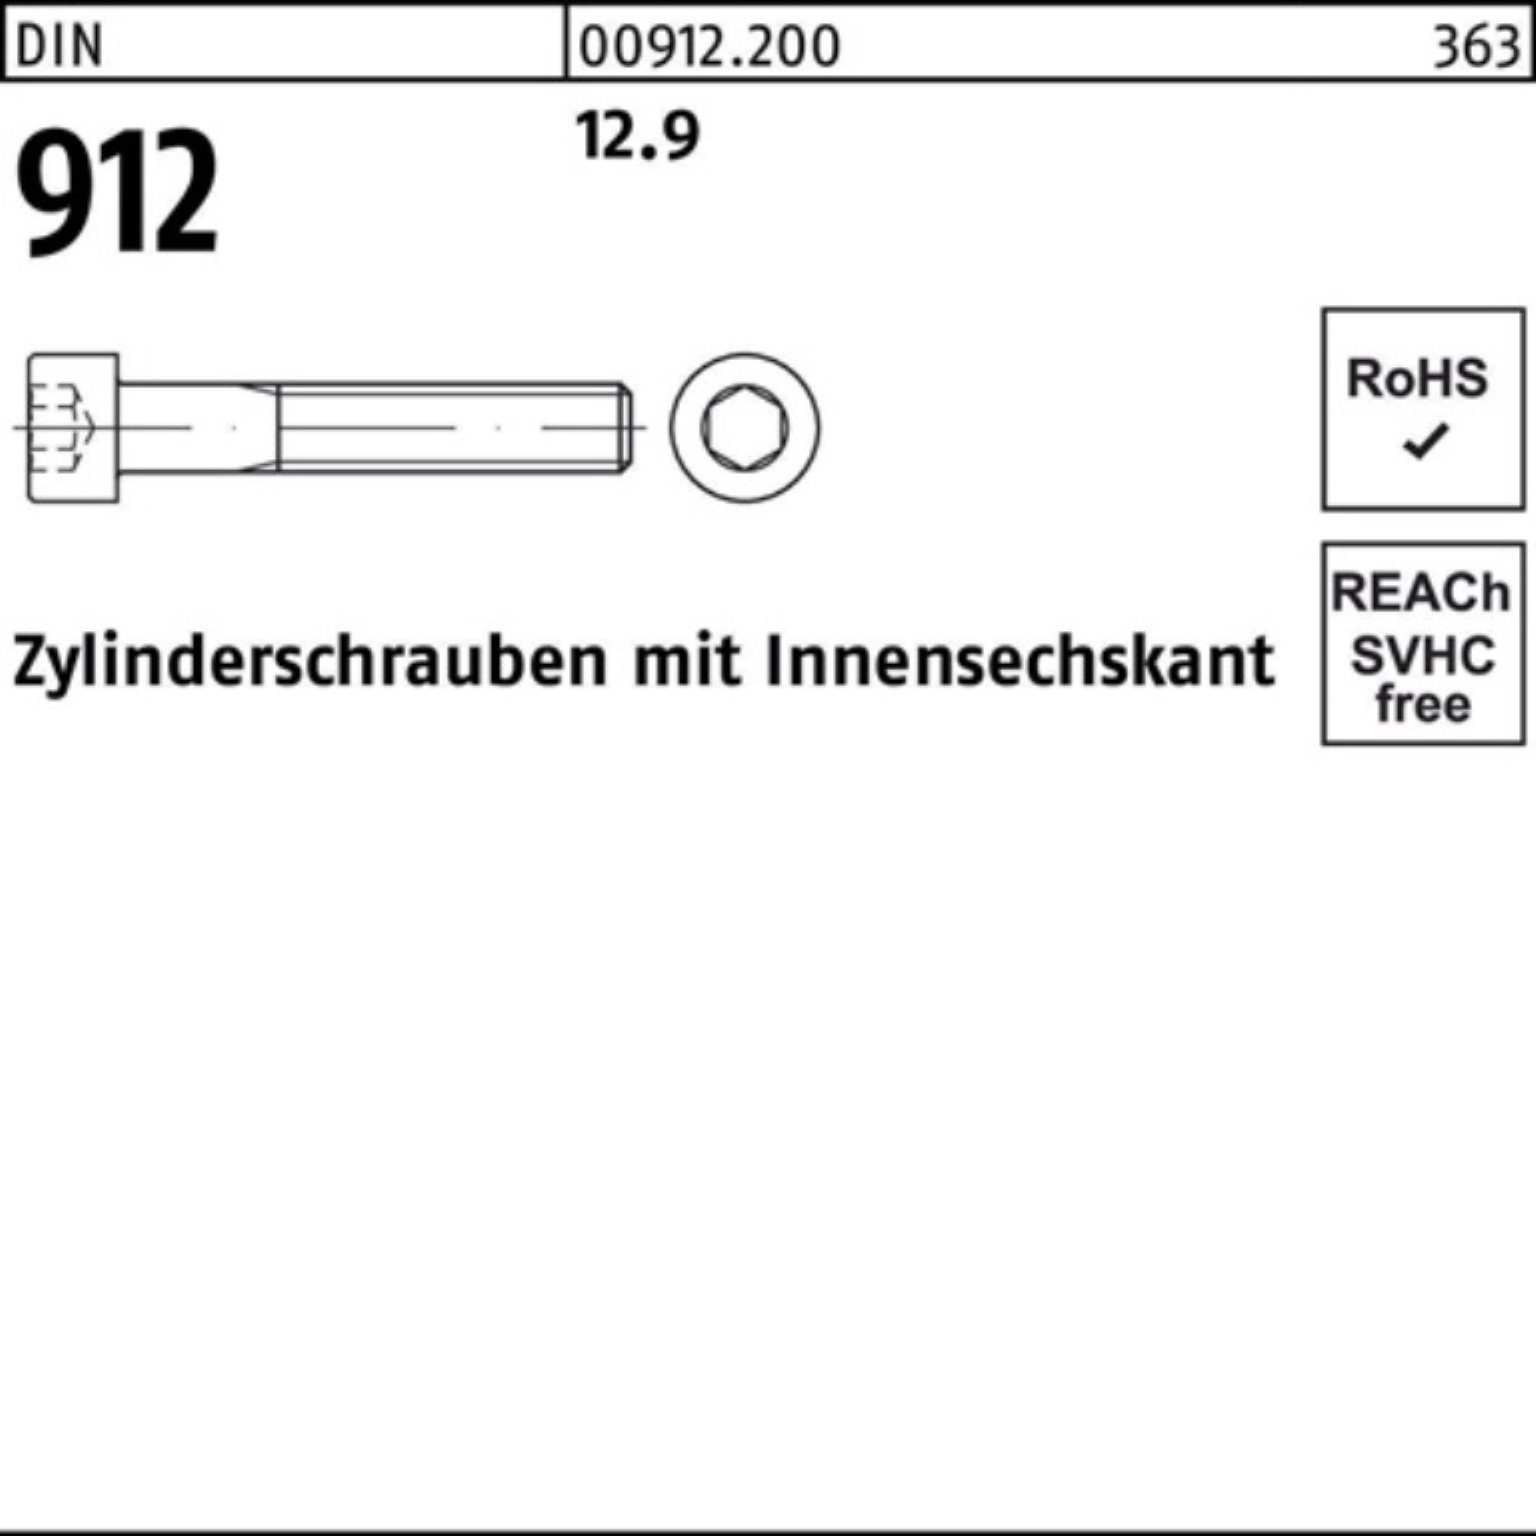 16 D Innen-6kt 912 100er 12.9 DIN Stück Reyher Zylinderschraube Pack 100 M4x Zylinderschraube